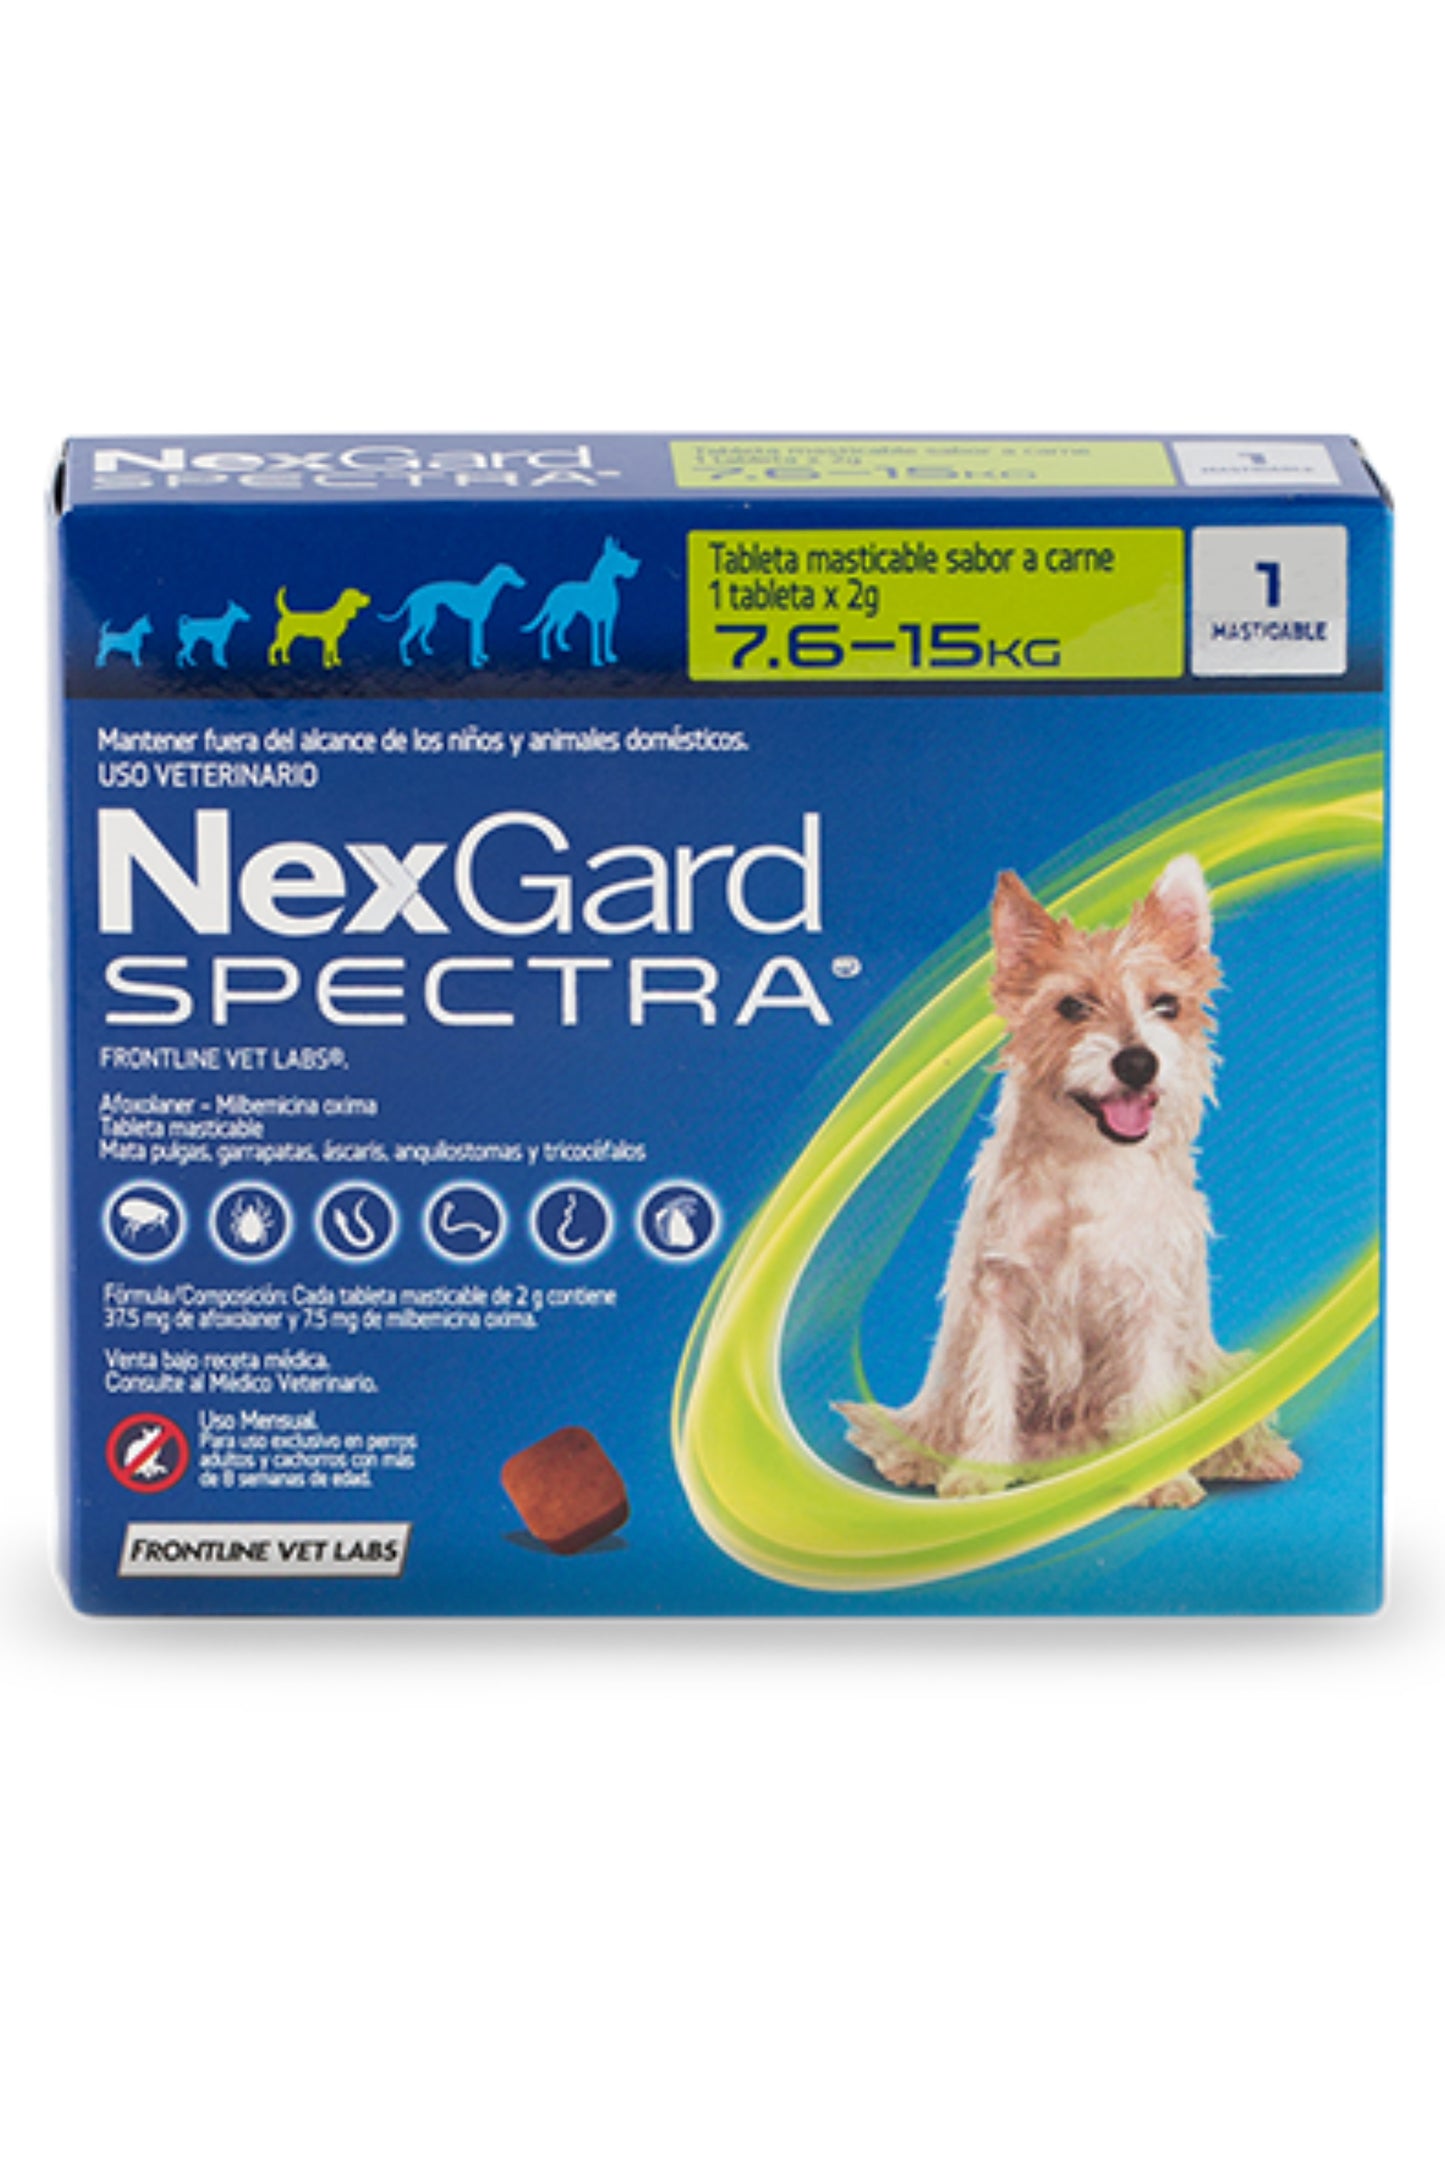 NexGard Spectra® | Anti pulgas, garrapatas y gusanos intestinales